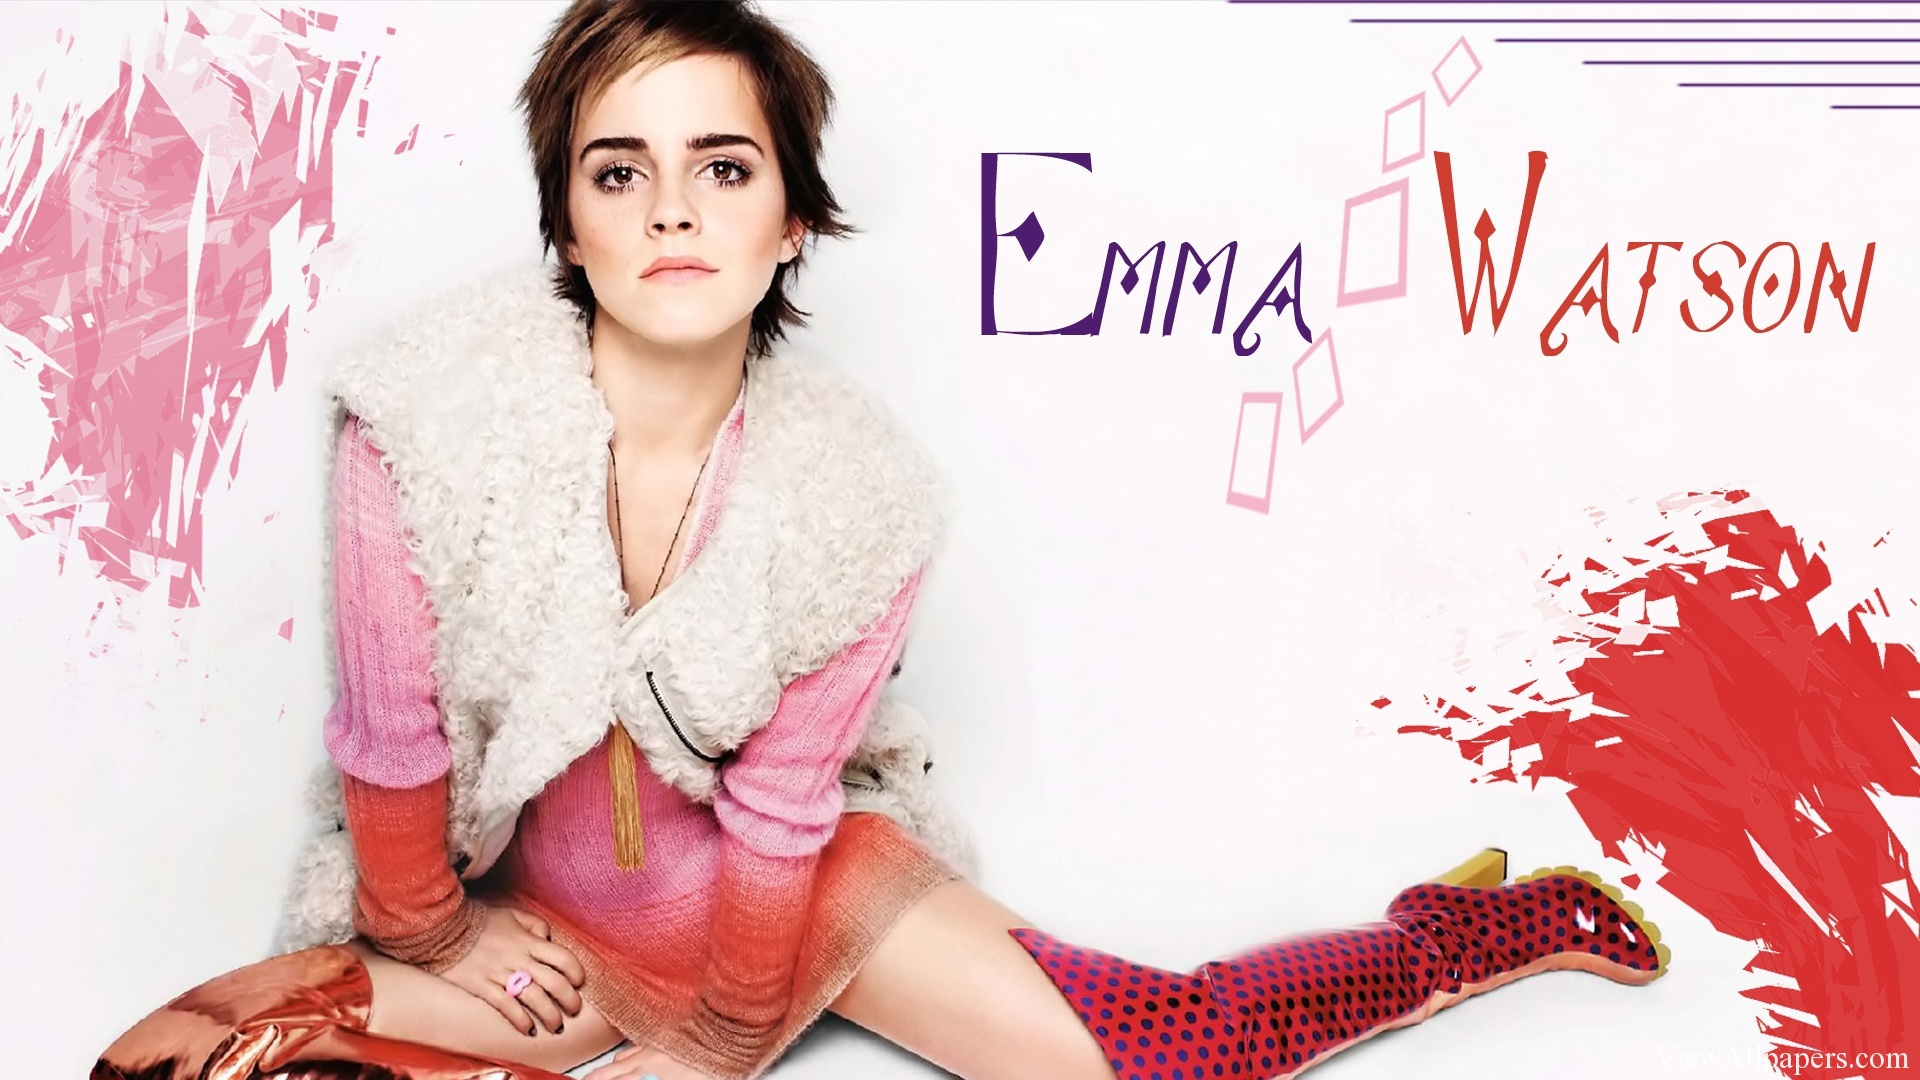 Emma Watson Wallpaper High Resolution